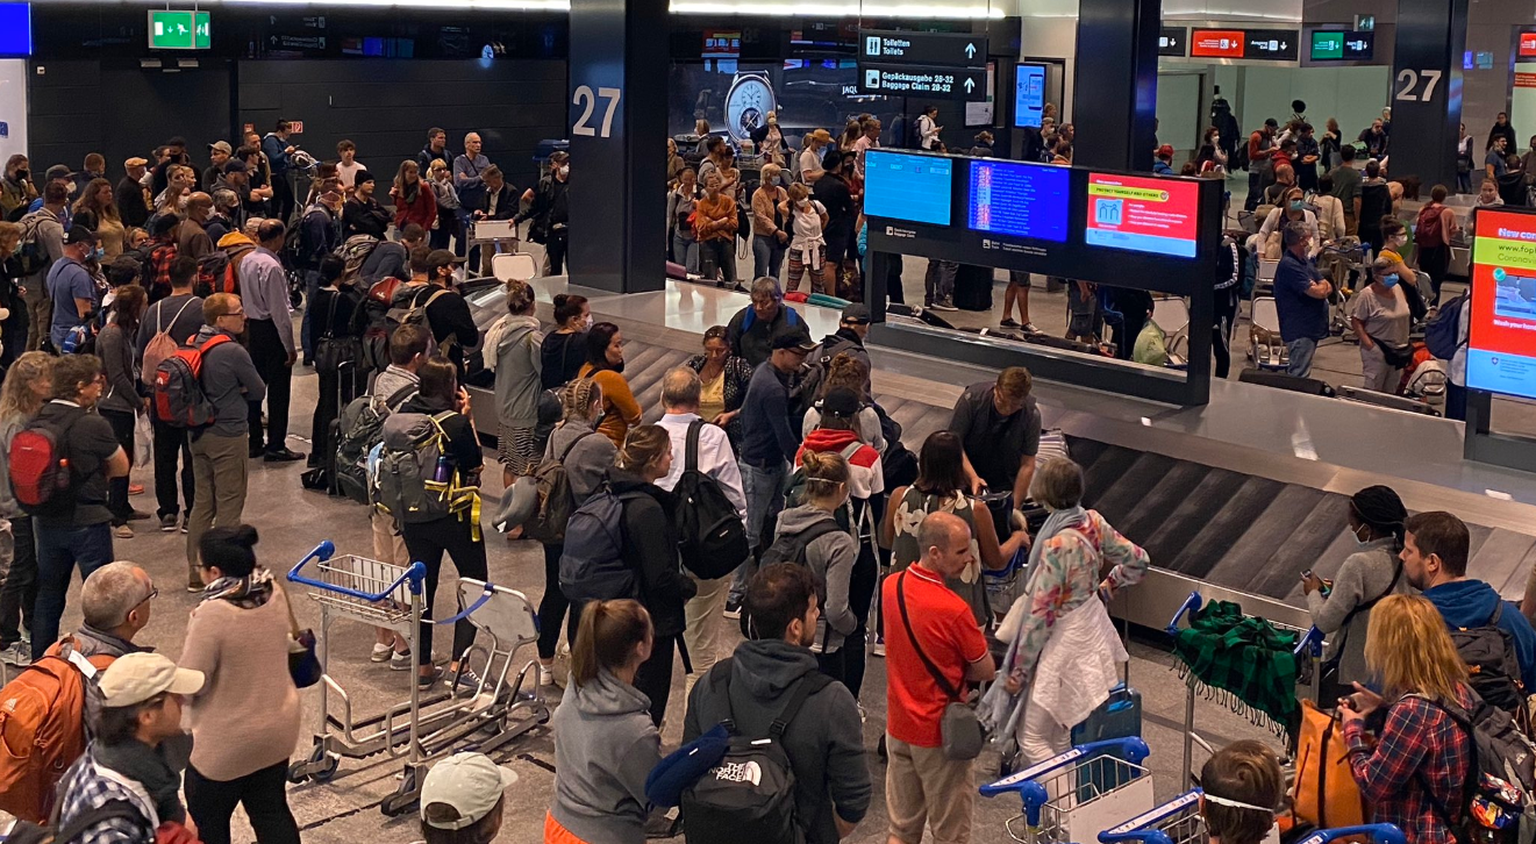 2-Meter-Abstand? Von wegen: Dicht gedrängt warten Passagiere am Flughafen Zürich auf ihr Gepäck.